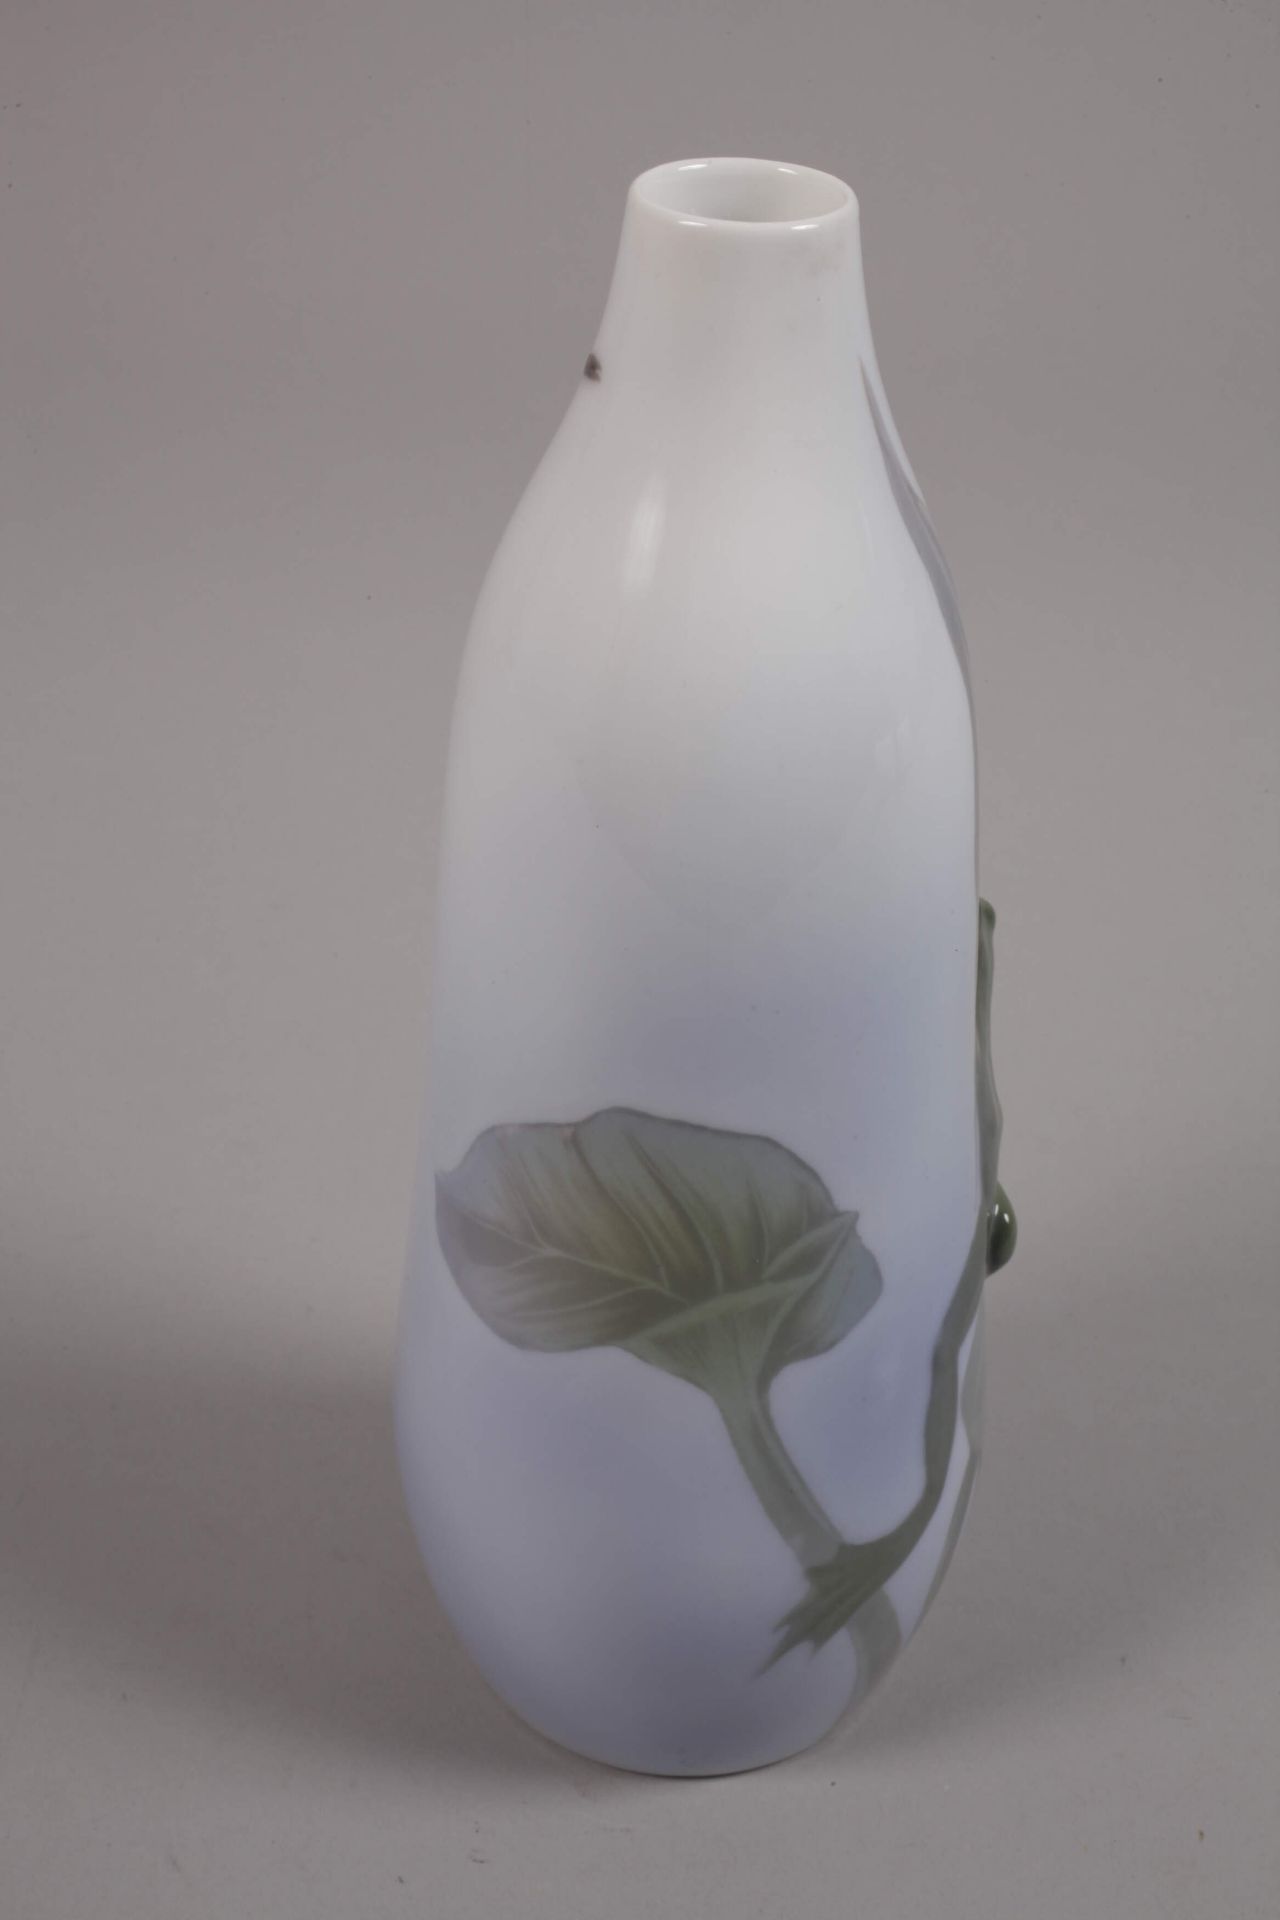 Copenhagen Vase with Water Frog - Image 3 of 4